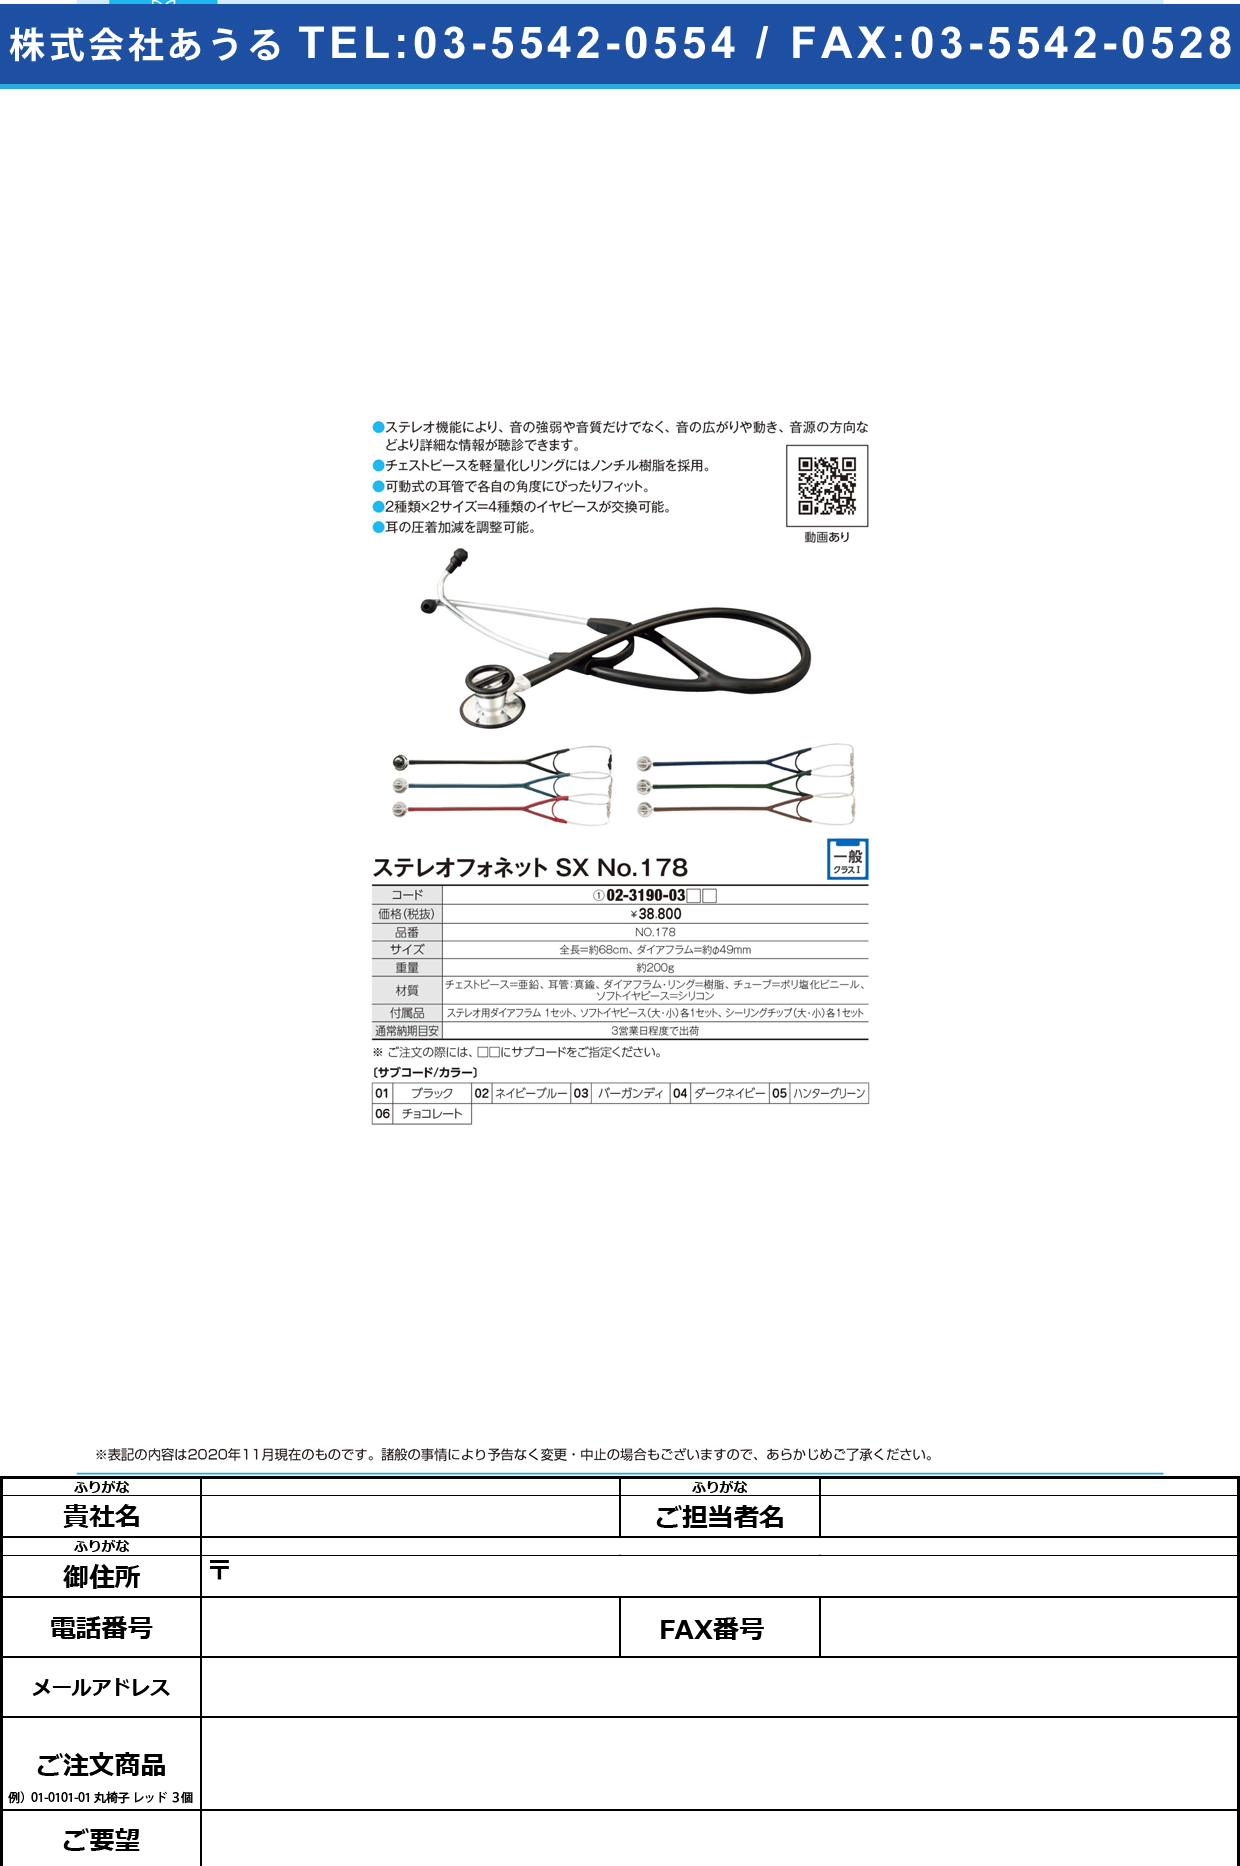 聴診器ステレオフォネットSX NO．178NO.178ハンターグリーン(02-3190-03-05)【ケンツメディコ】(販売単位:1)